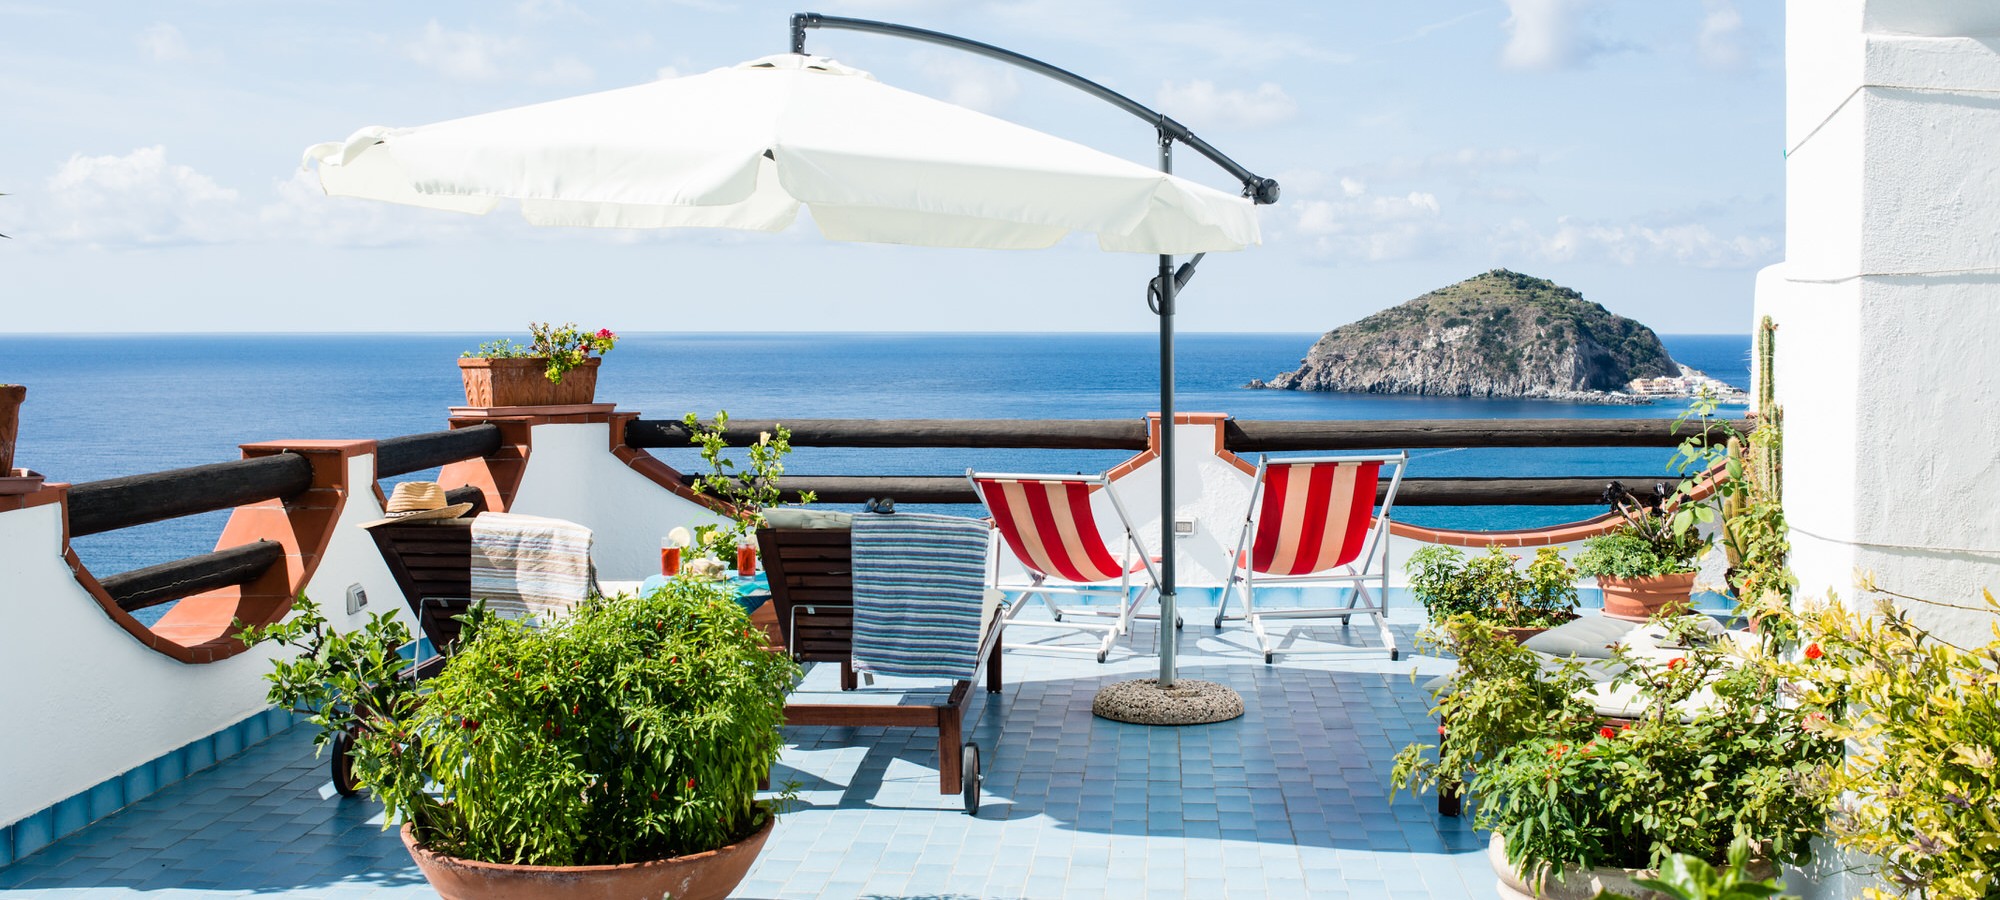 Terrazza con lettini solari e ombrellone ad Ischia con vista sul mare e sulla spiaggia